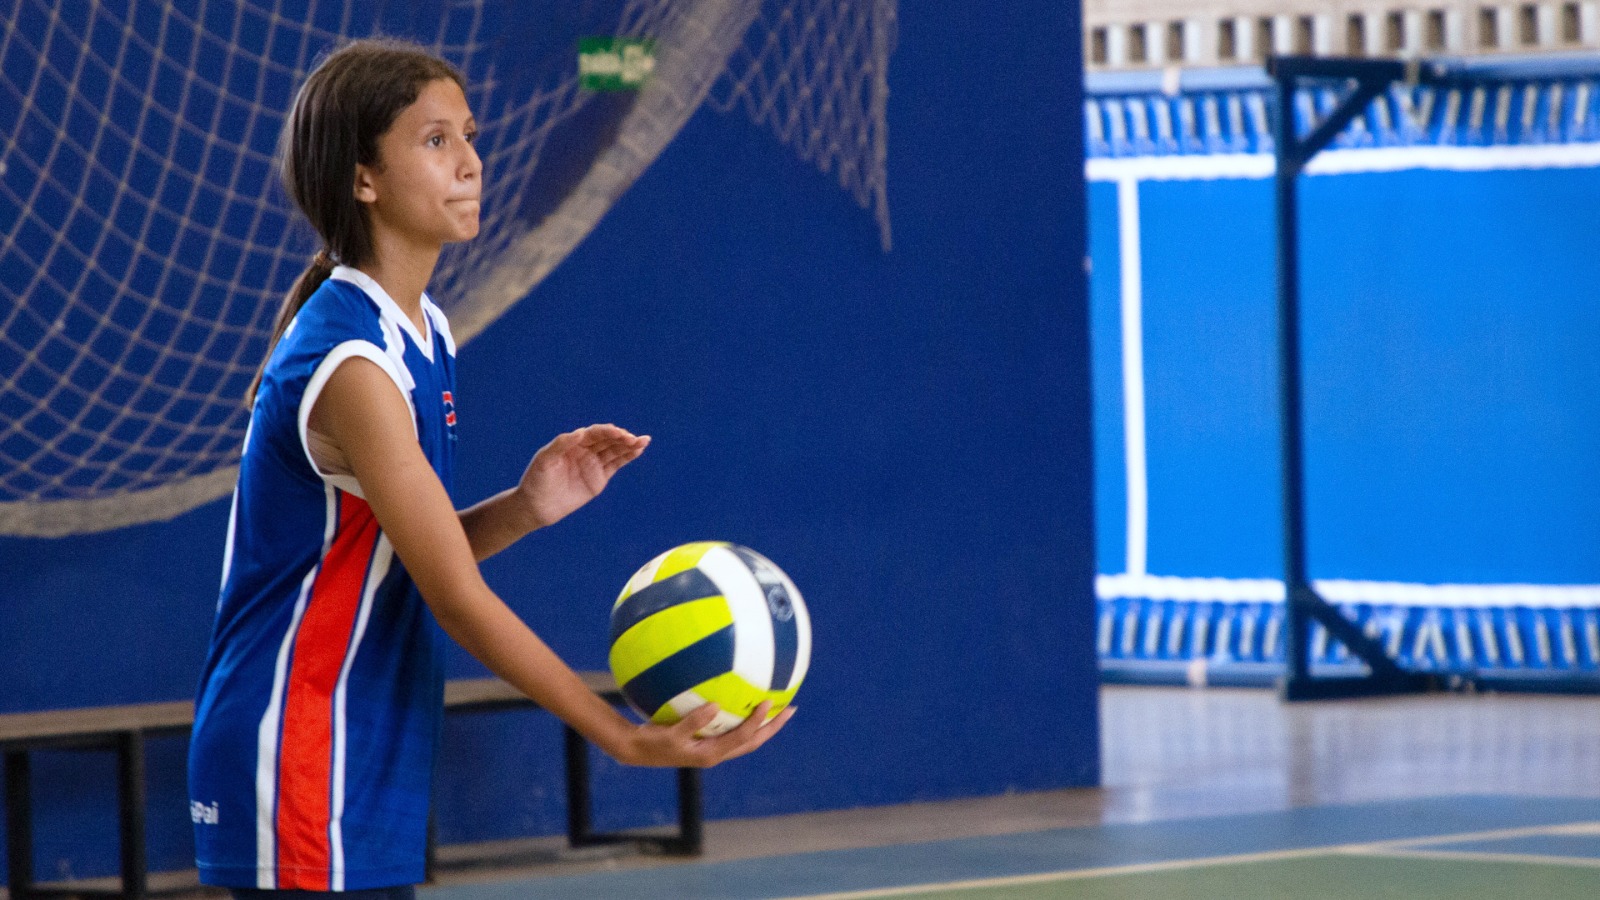 Seletivas esportivas no CEV Colégio! Inscrições abertas para os times de Futsal,  Voleibol e Handebol